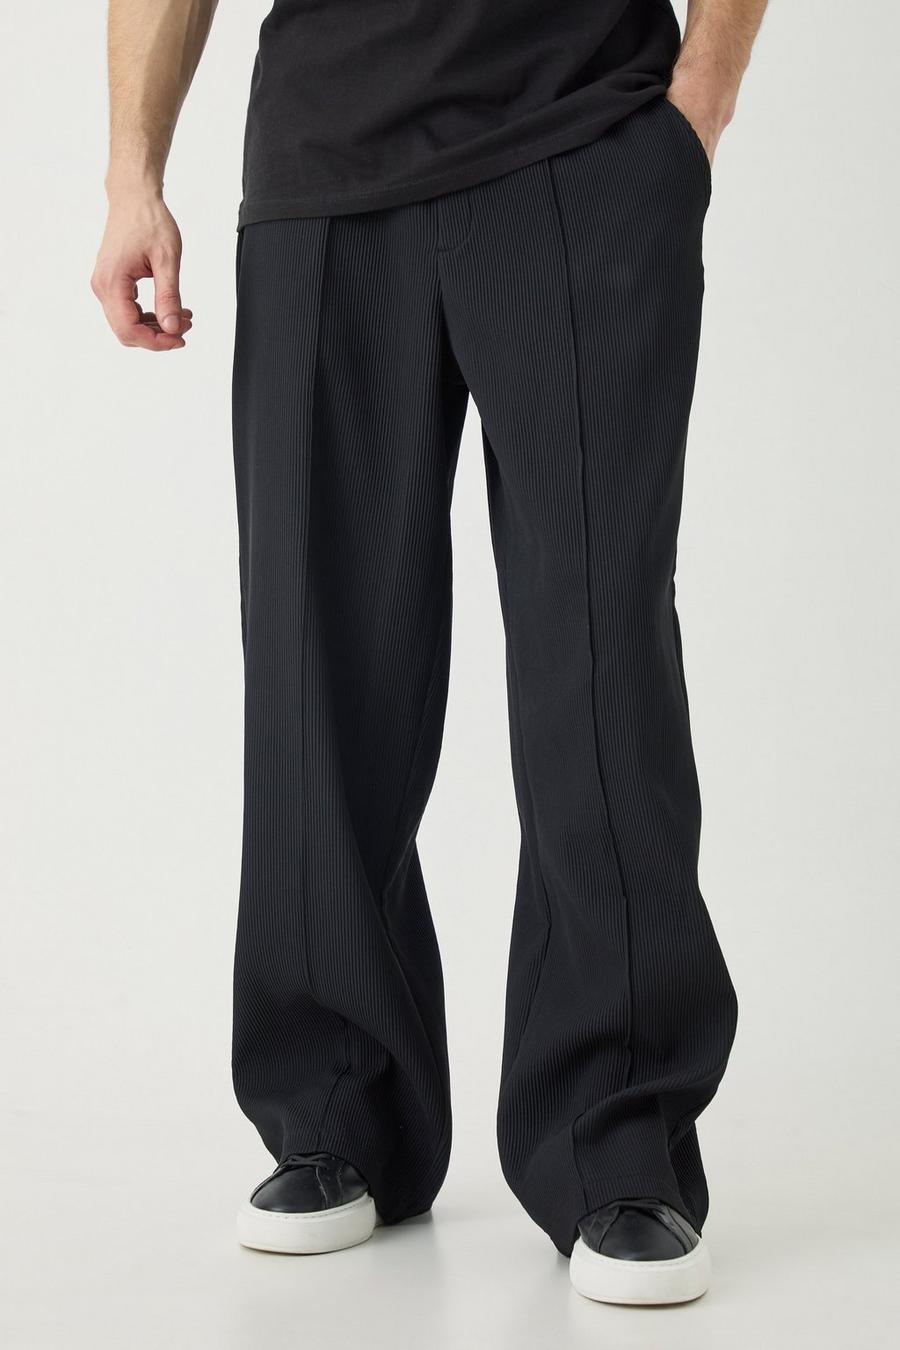 Pantaloni Tall a gamba ampia elasticizzati in vita con pieghe e cuciture, Black